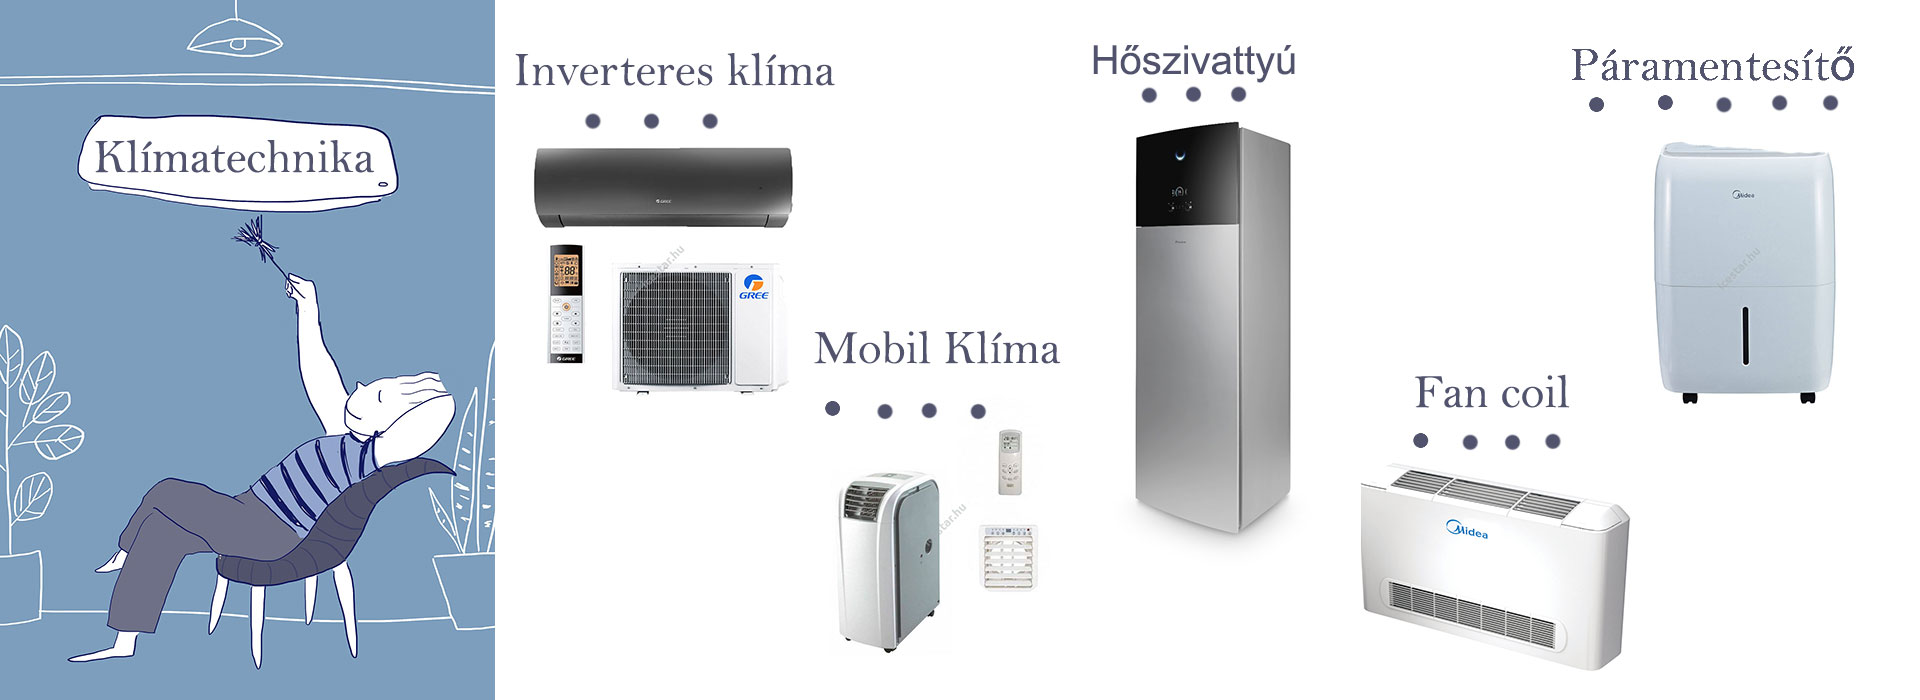 Klímatechnika-inverteres klíma, mobil klíma, hőszivattyú, páramentesítő,fan coil